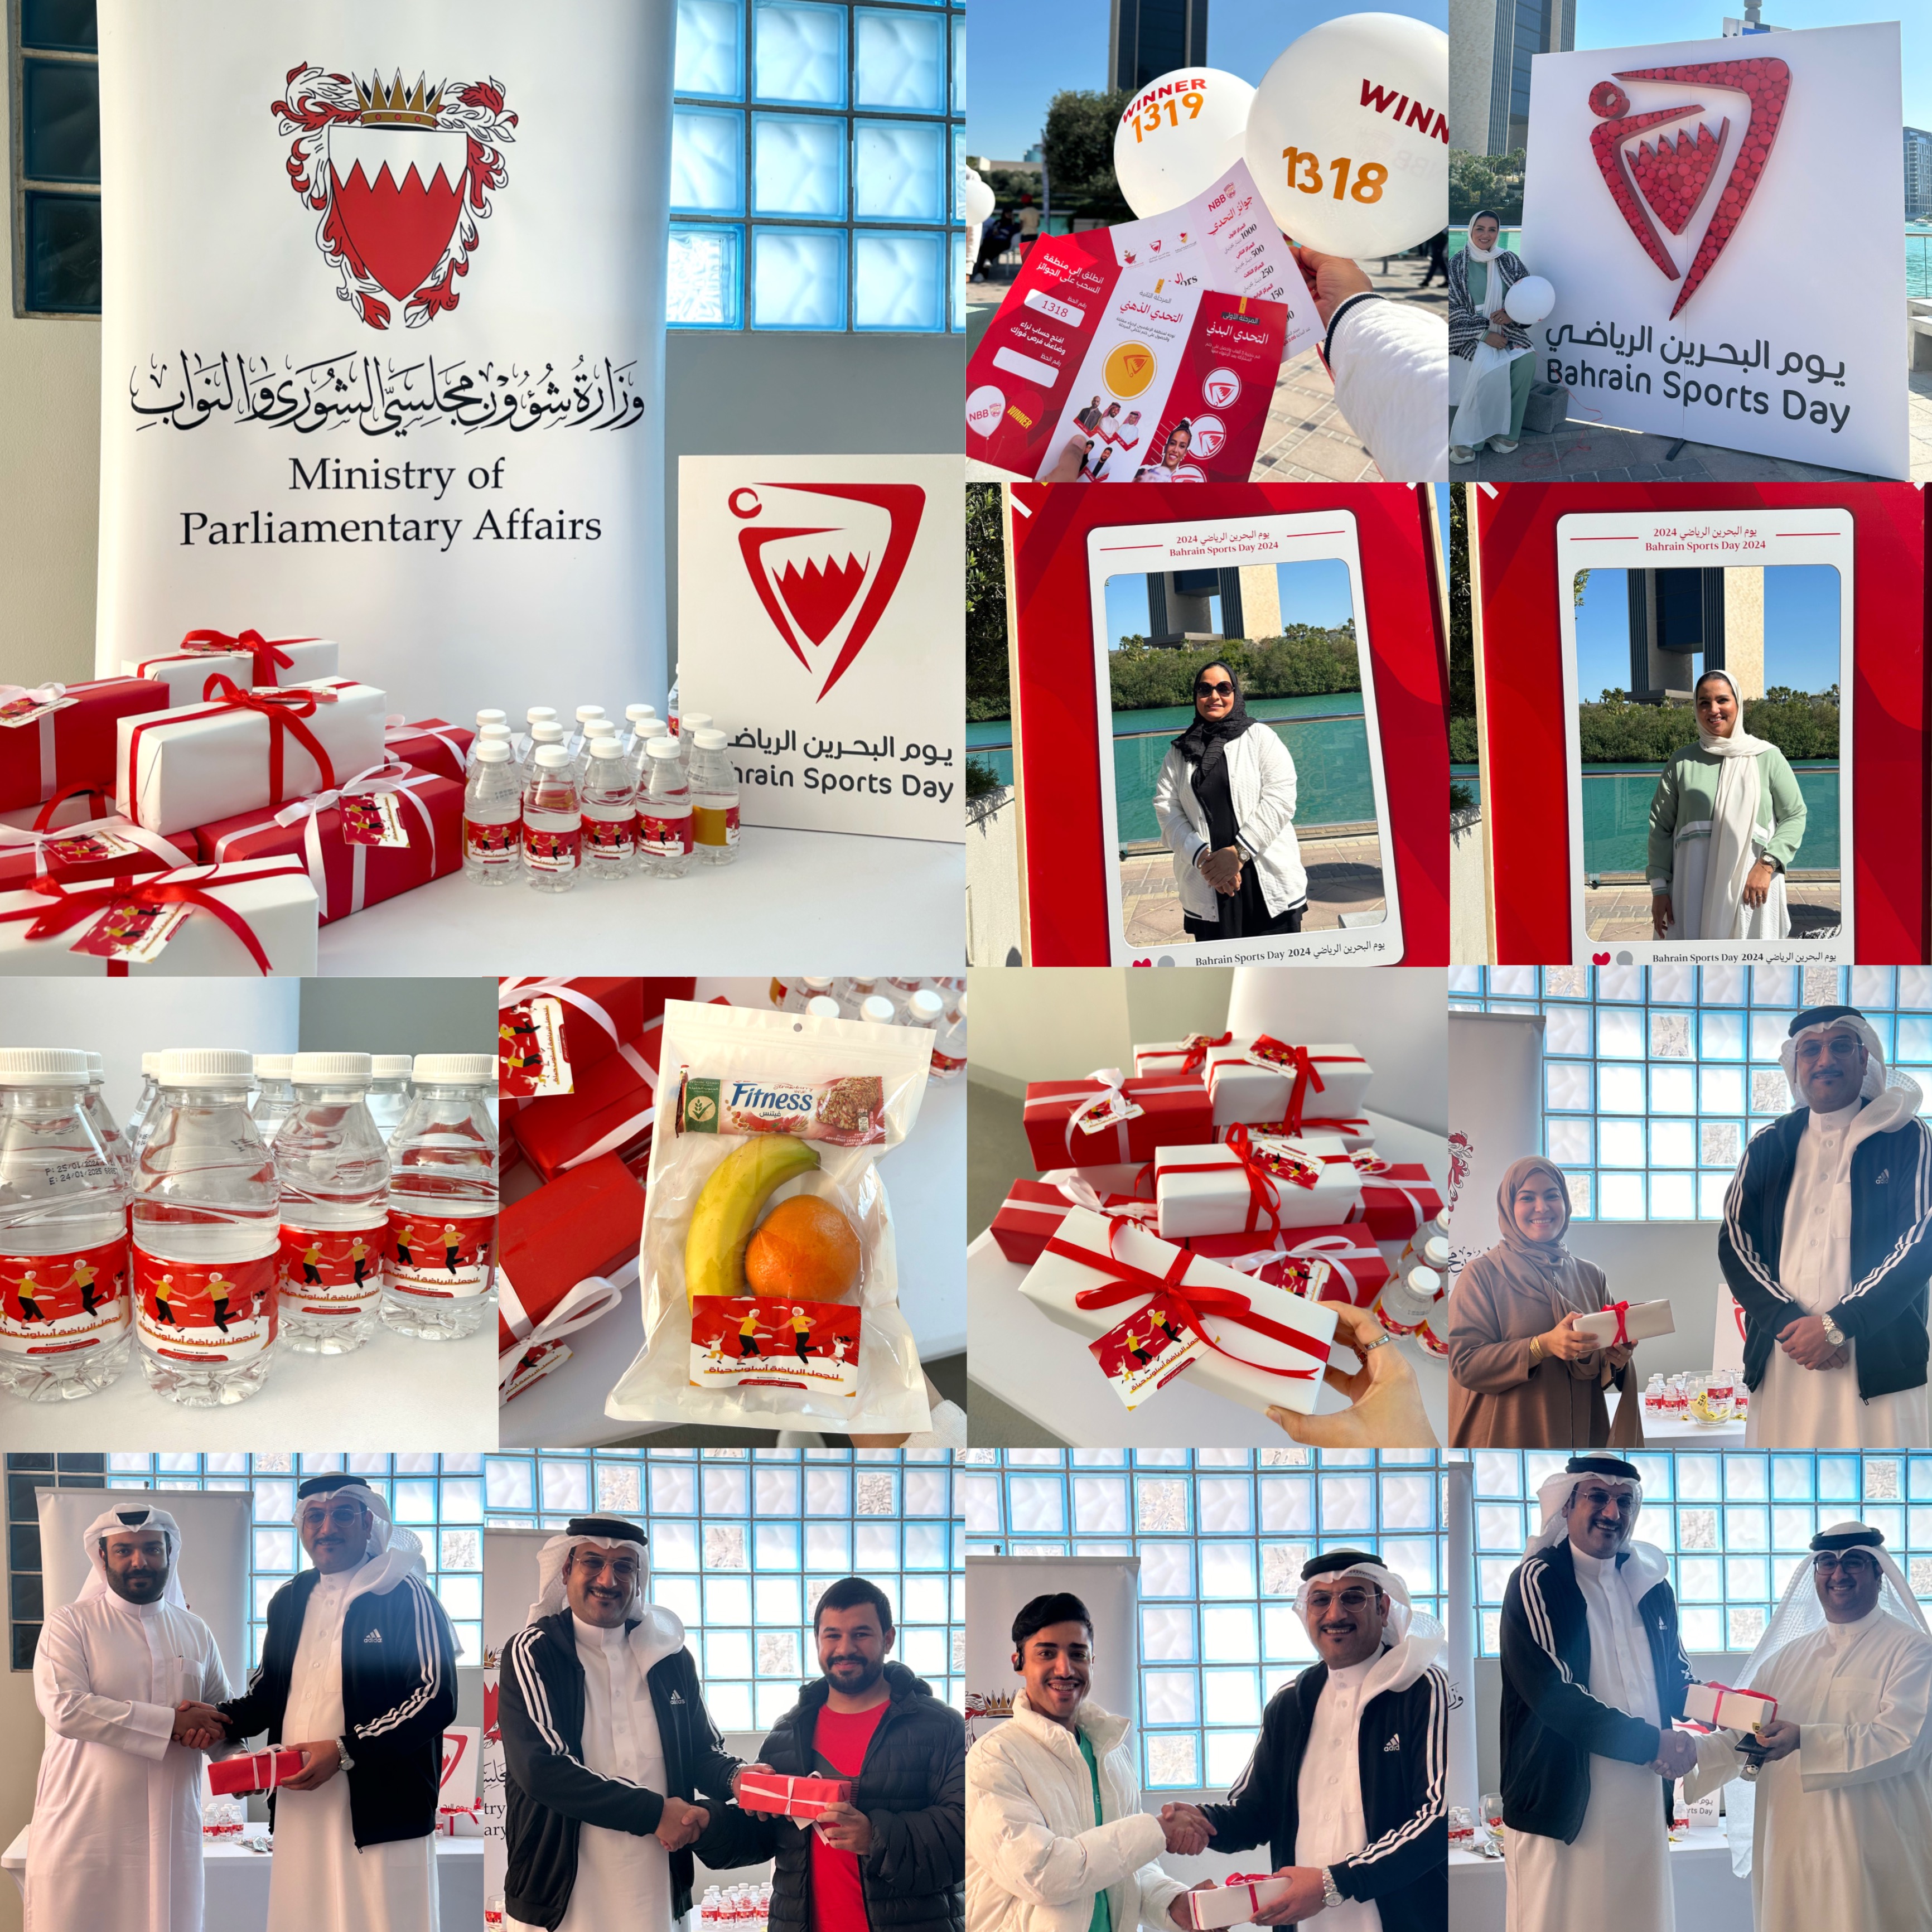 مشاركة موظفو وزارة شؤون مجلسي الشورى والنواب في اليوم الوطني الرياضي لمملكة البحرين